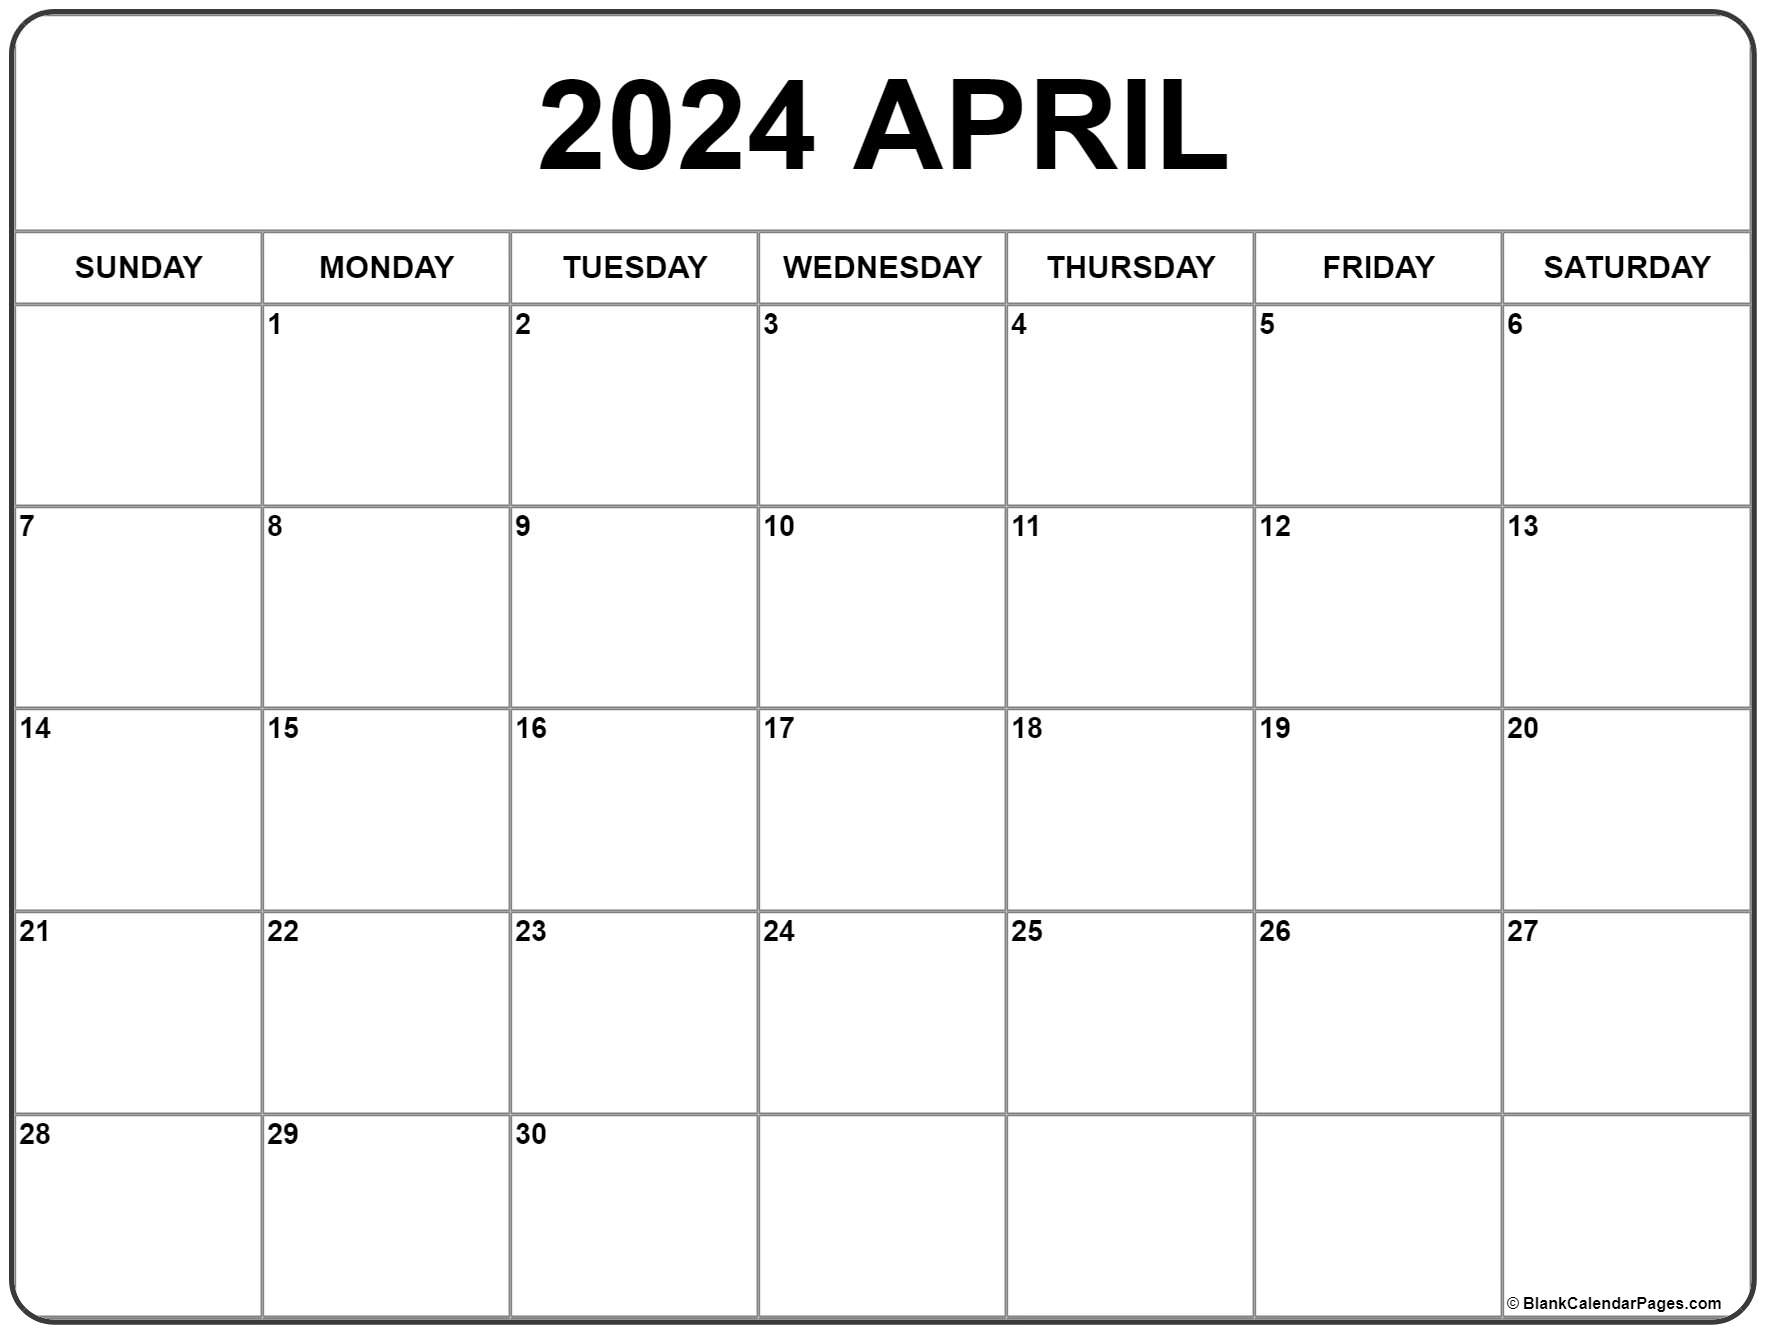 April 2024 Calendar | Free Printable Calendar in Free Printable April Monthly Calendar 2024